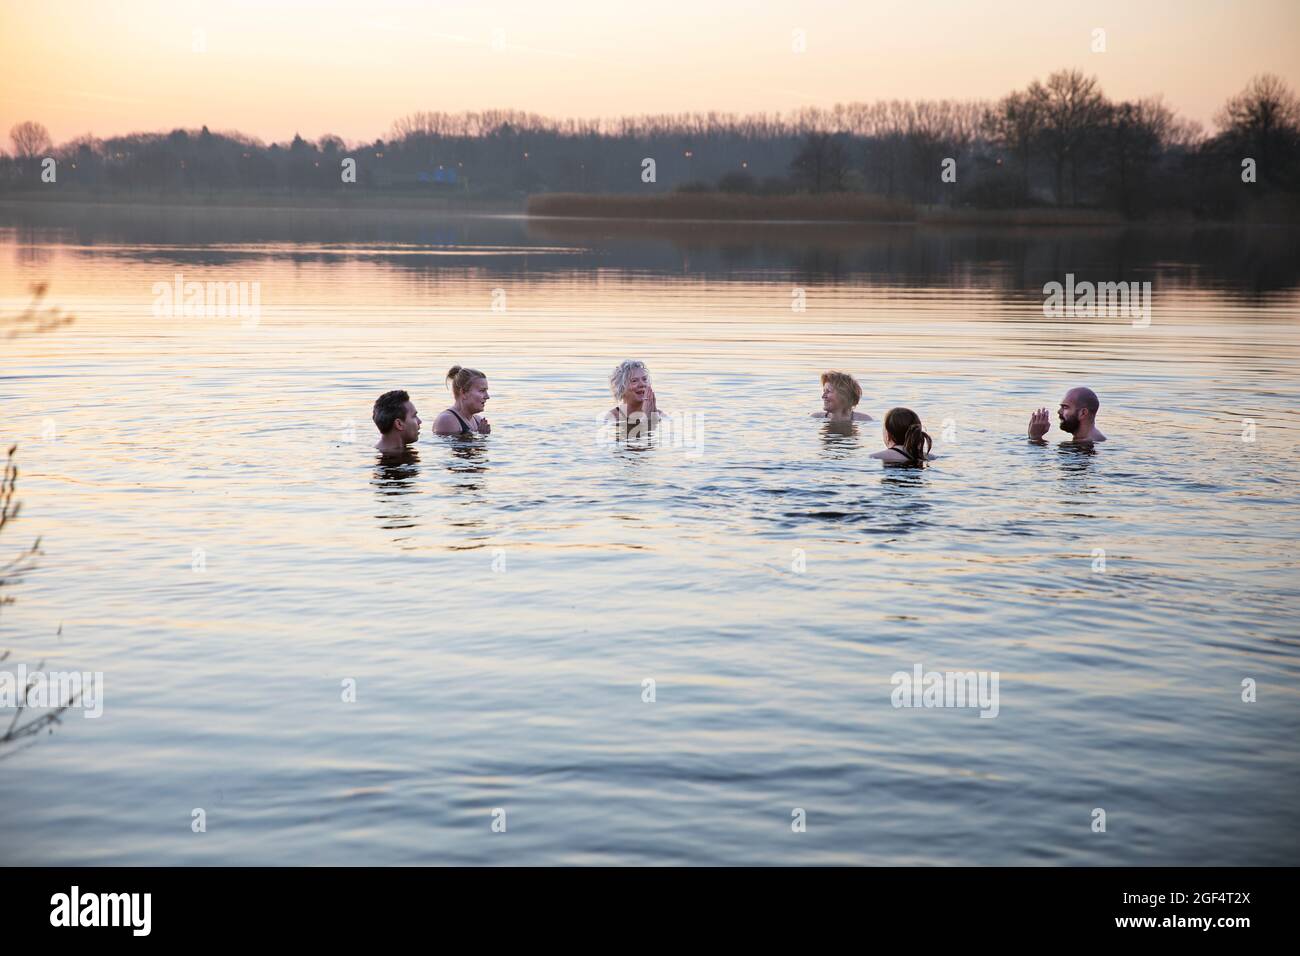 Hombres y mujeres disfrutando del agua fría por la mañana Foto de stock